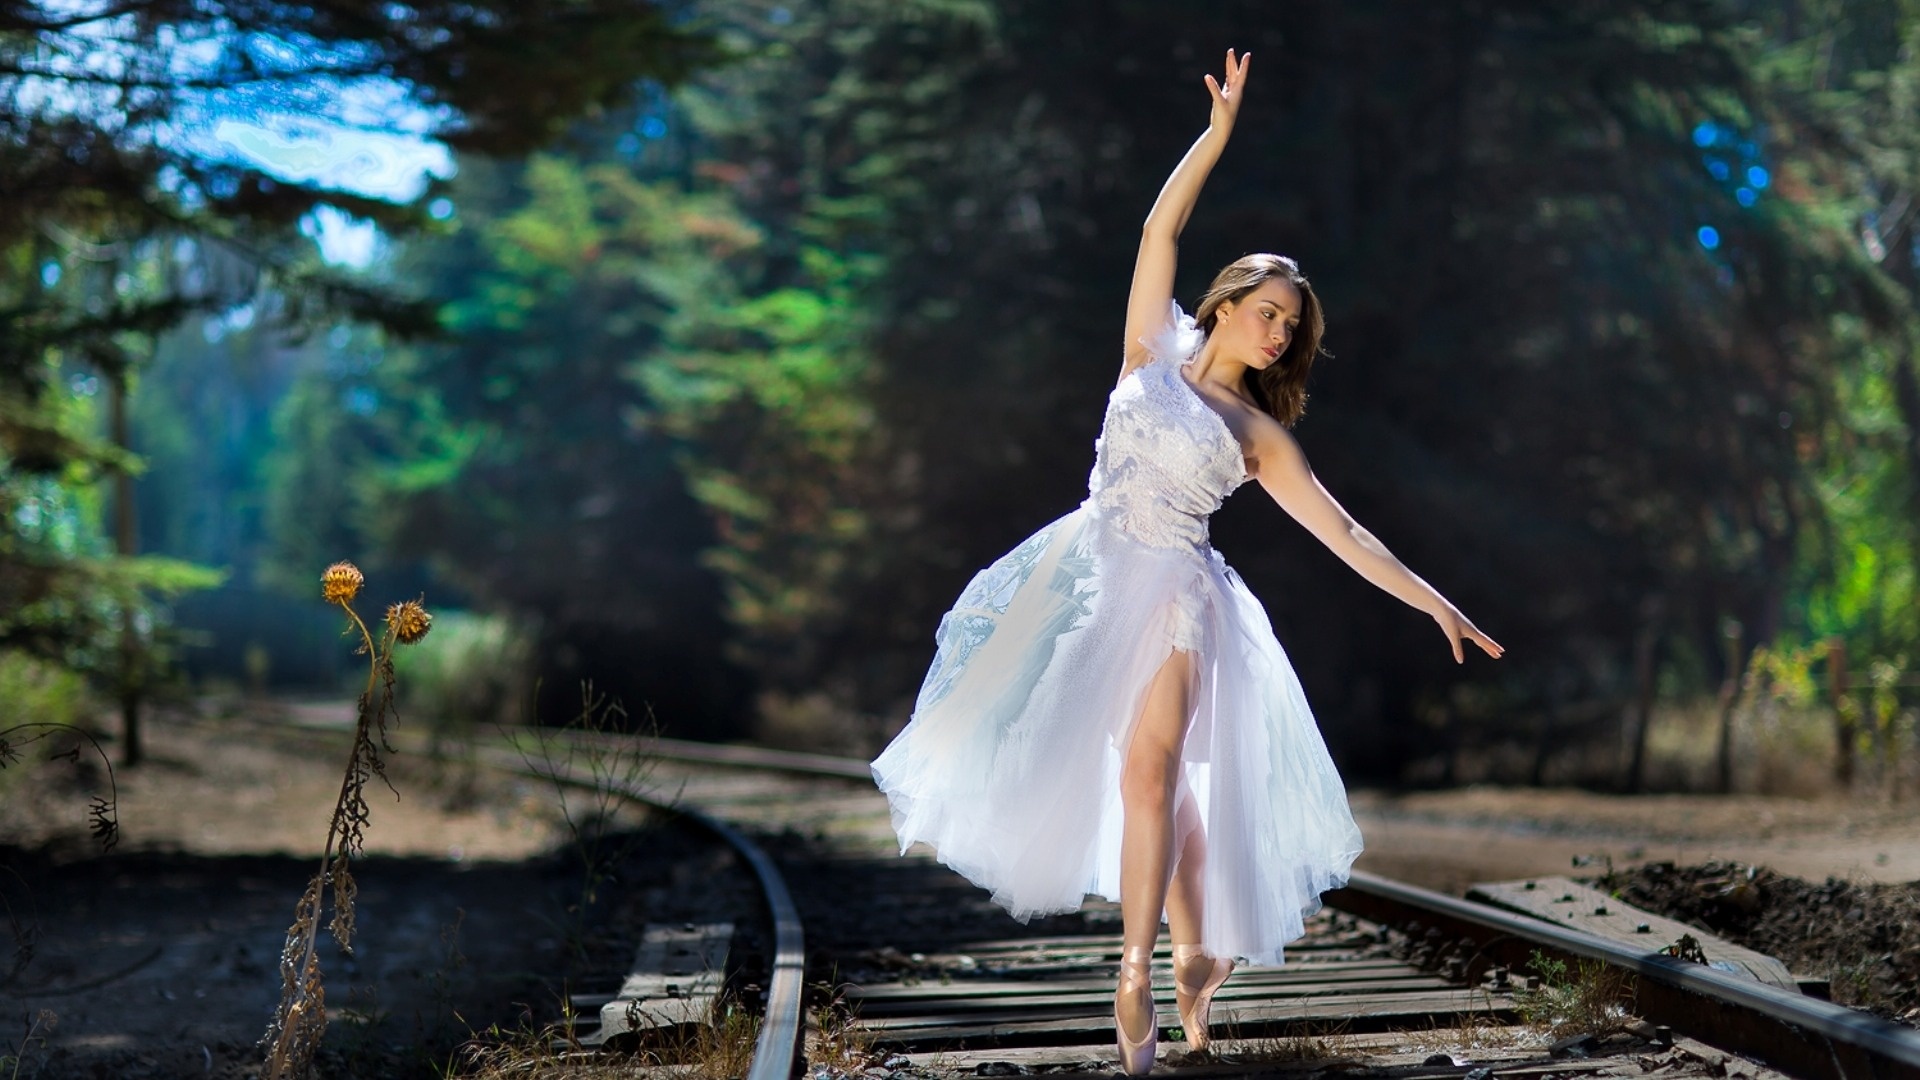 Beautiful ballerina, Railroad setting, Dreamy dance, Captivating wallpaper, 1920x1080 Full HD Desktop